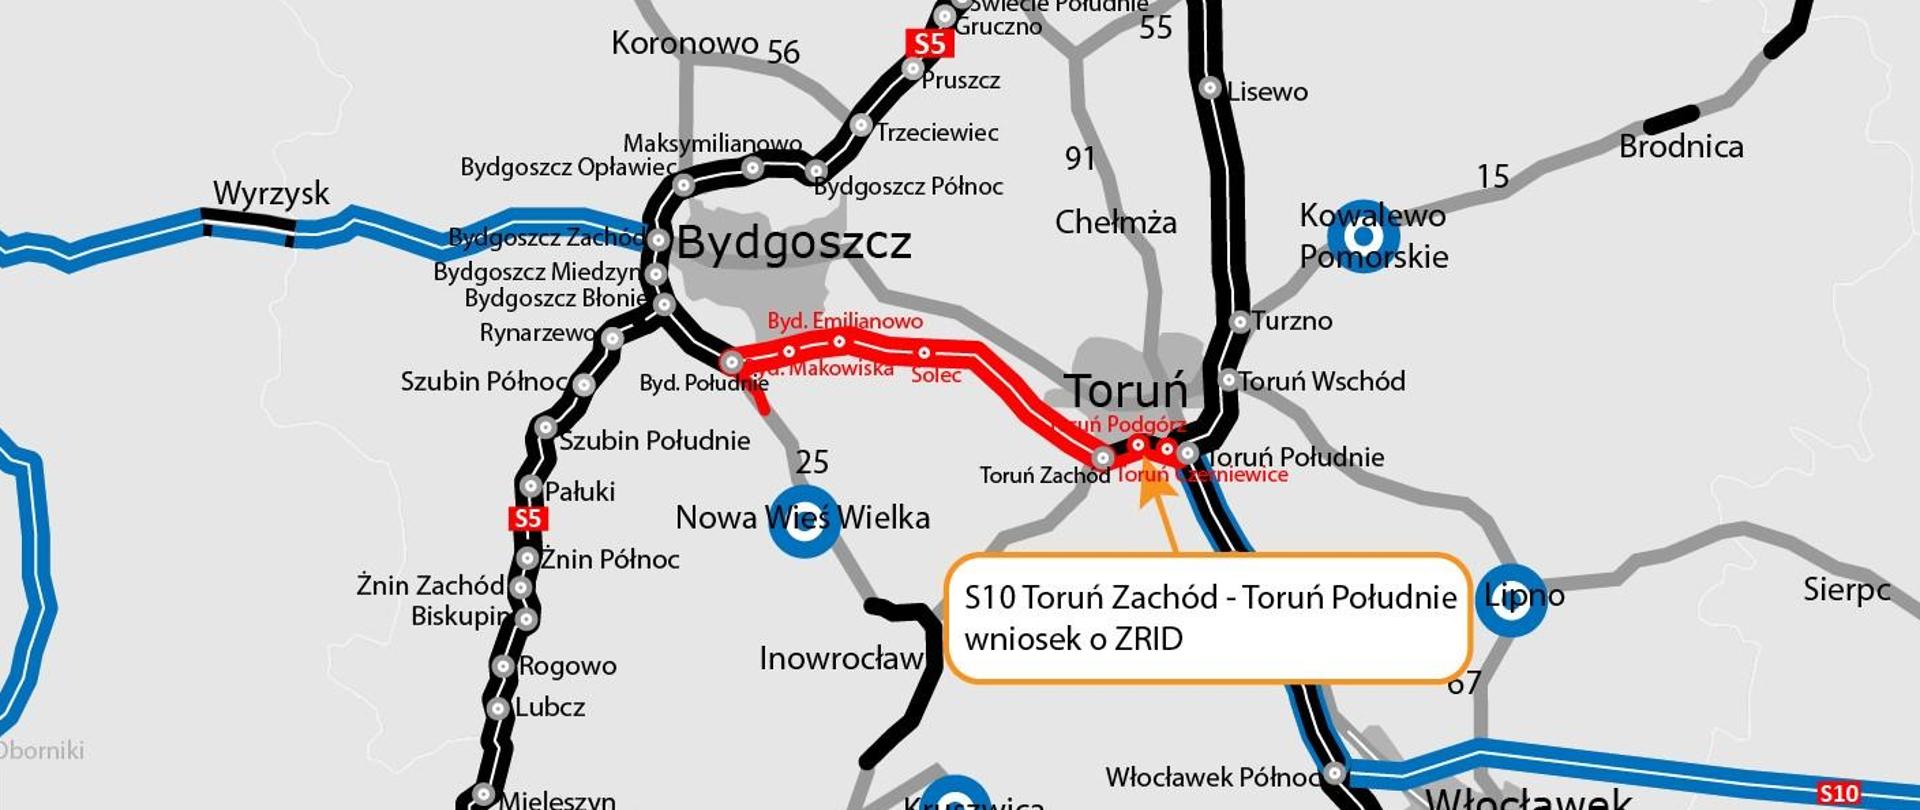 S10 Bydgoszcz - Toruń. Wniosek o ZRID dla odc. 4